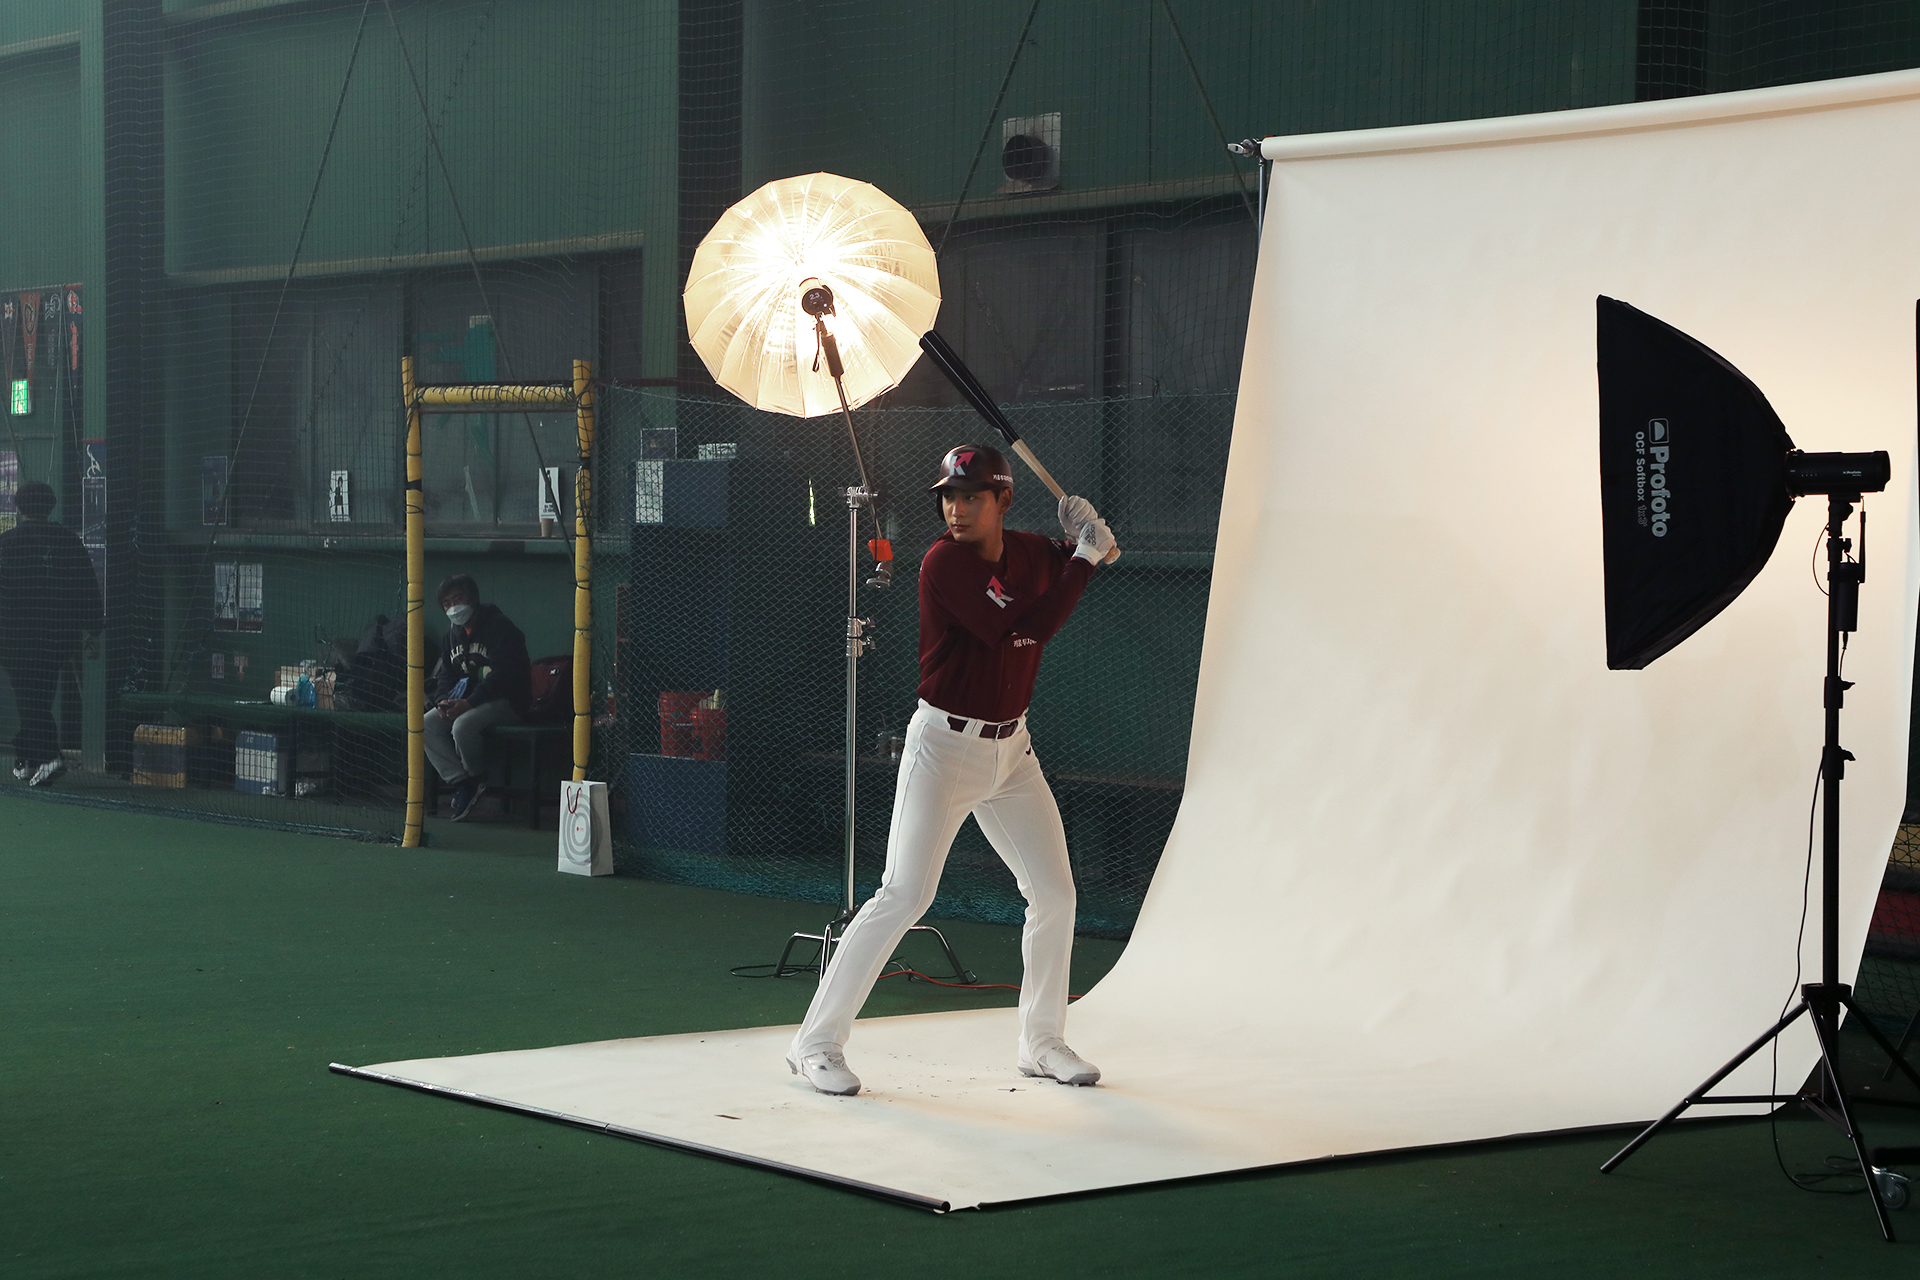 이정후 선수가 야구 배트를 들고 광고 지면 촬영하는 모습